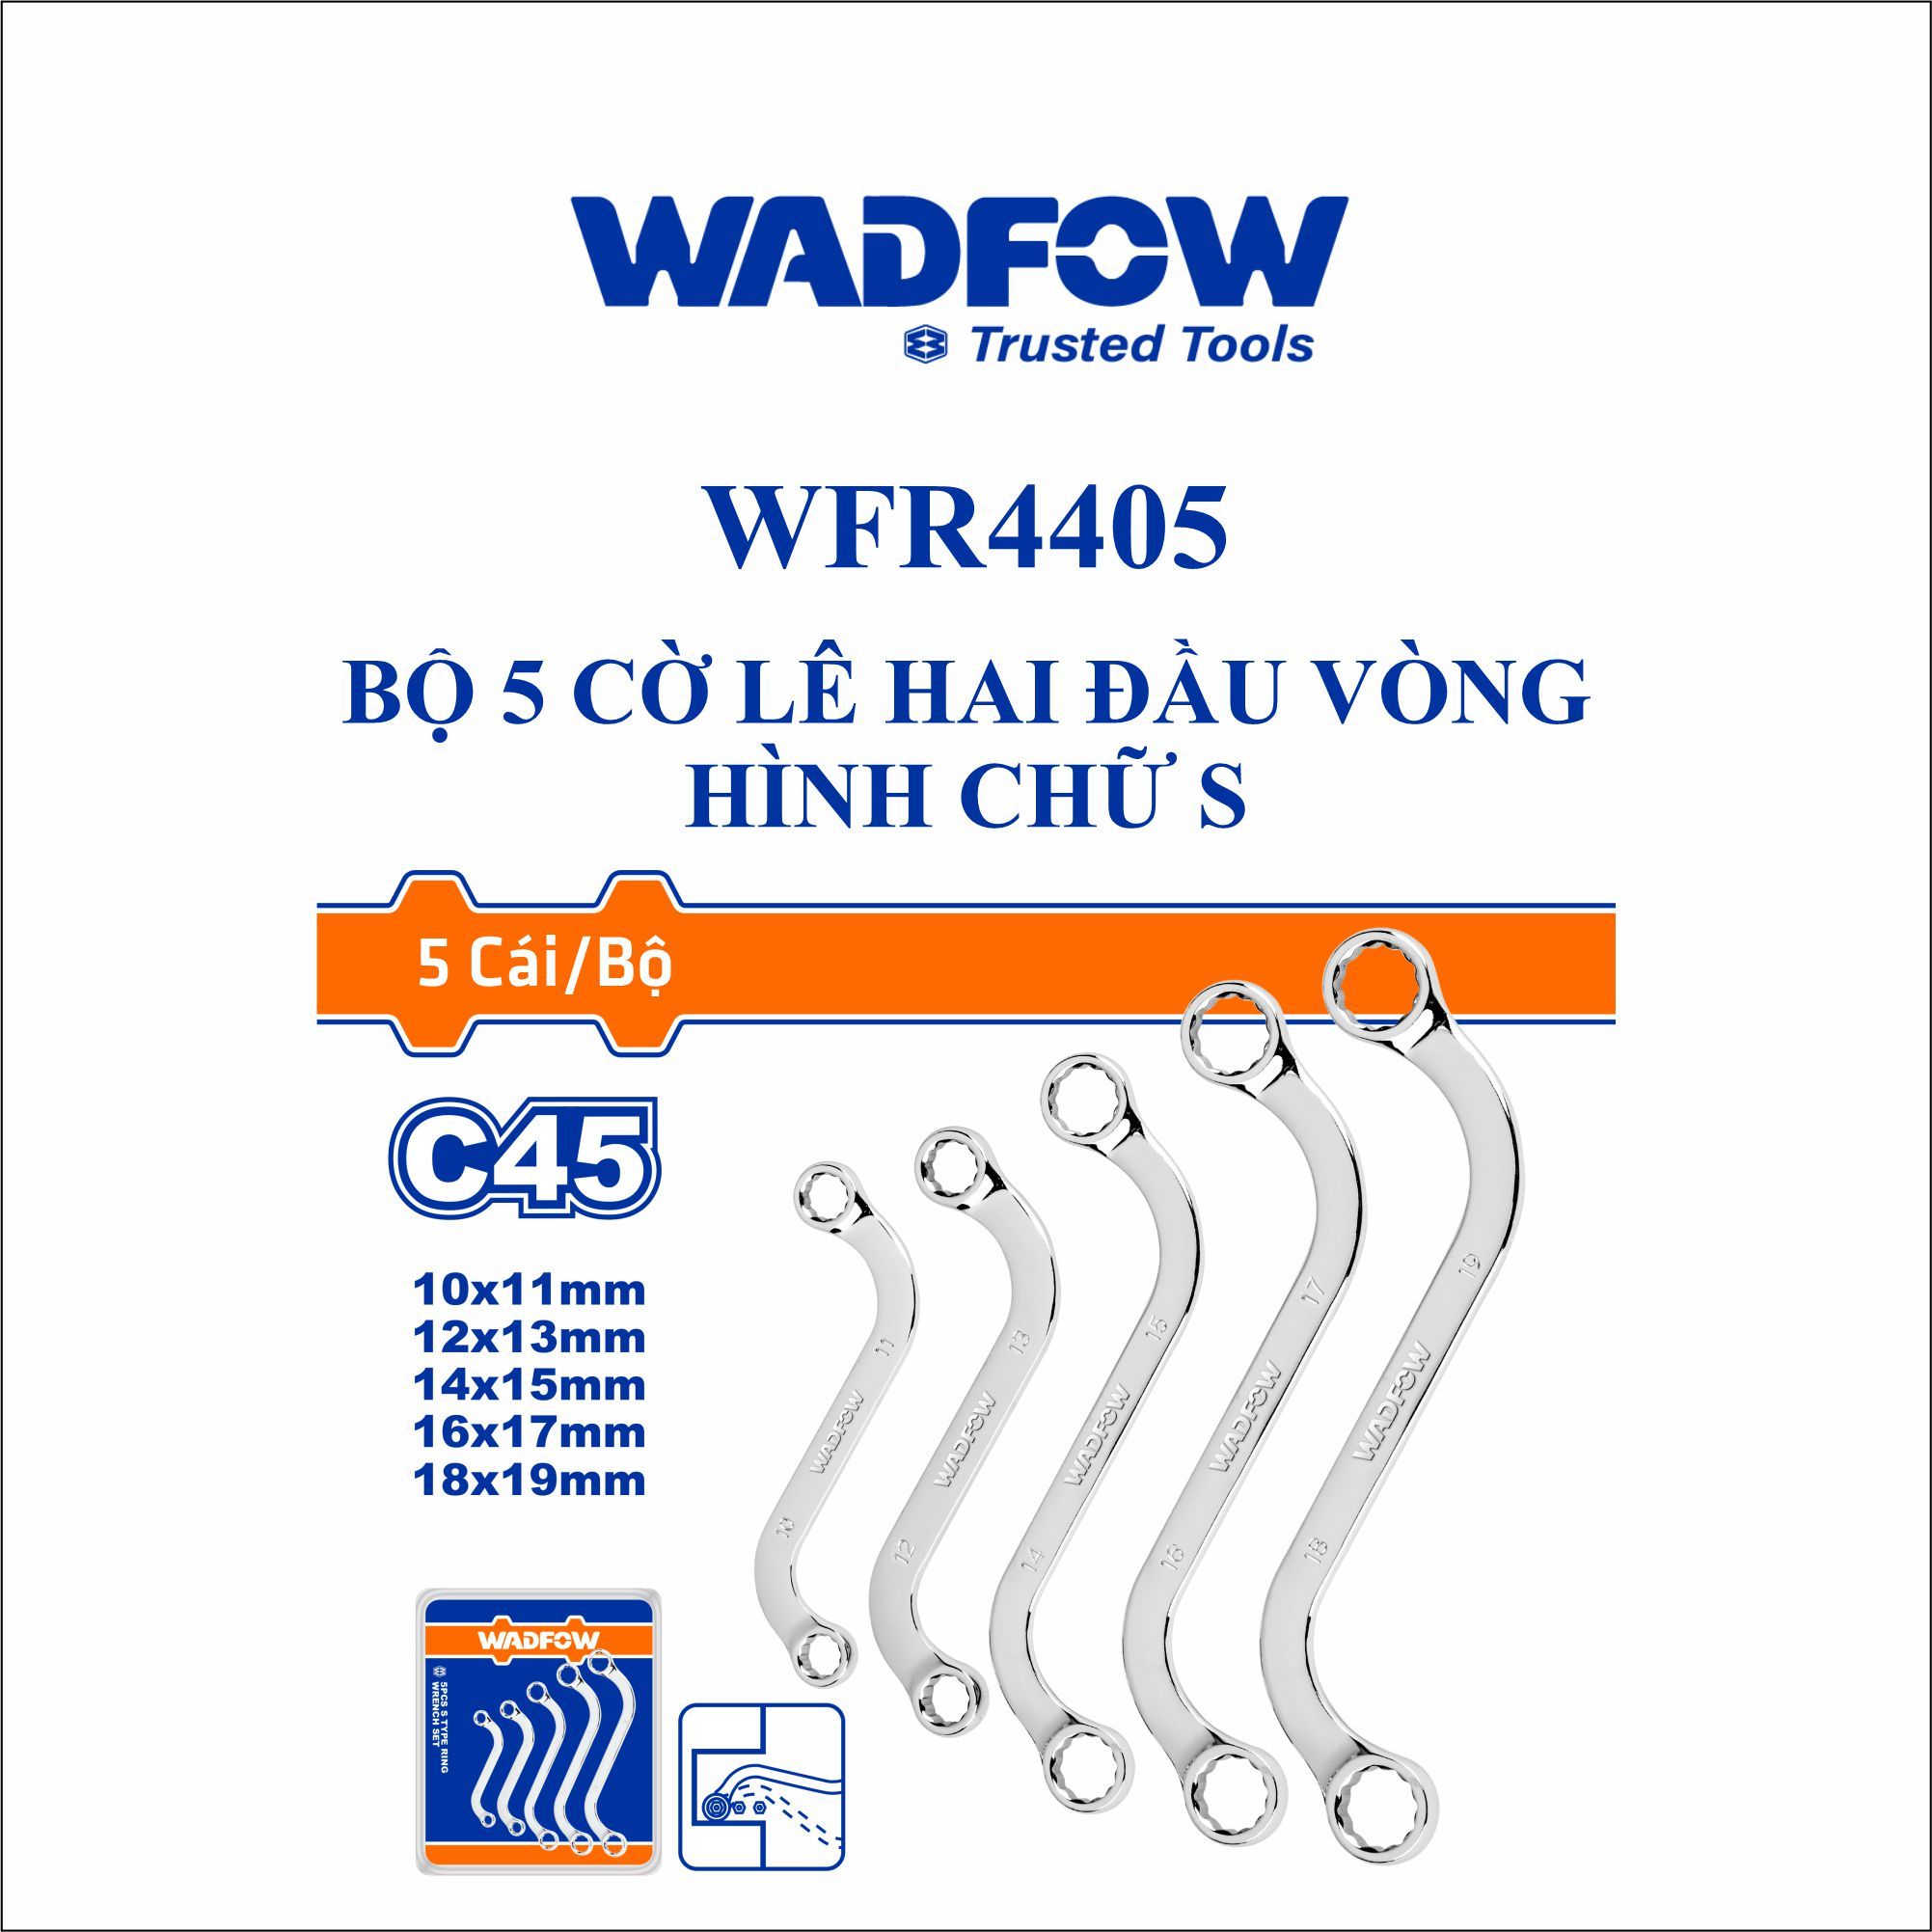  Bộ 5 cờ lê hai đầu vòng hình chữ S WADFOW WFR4405 